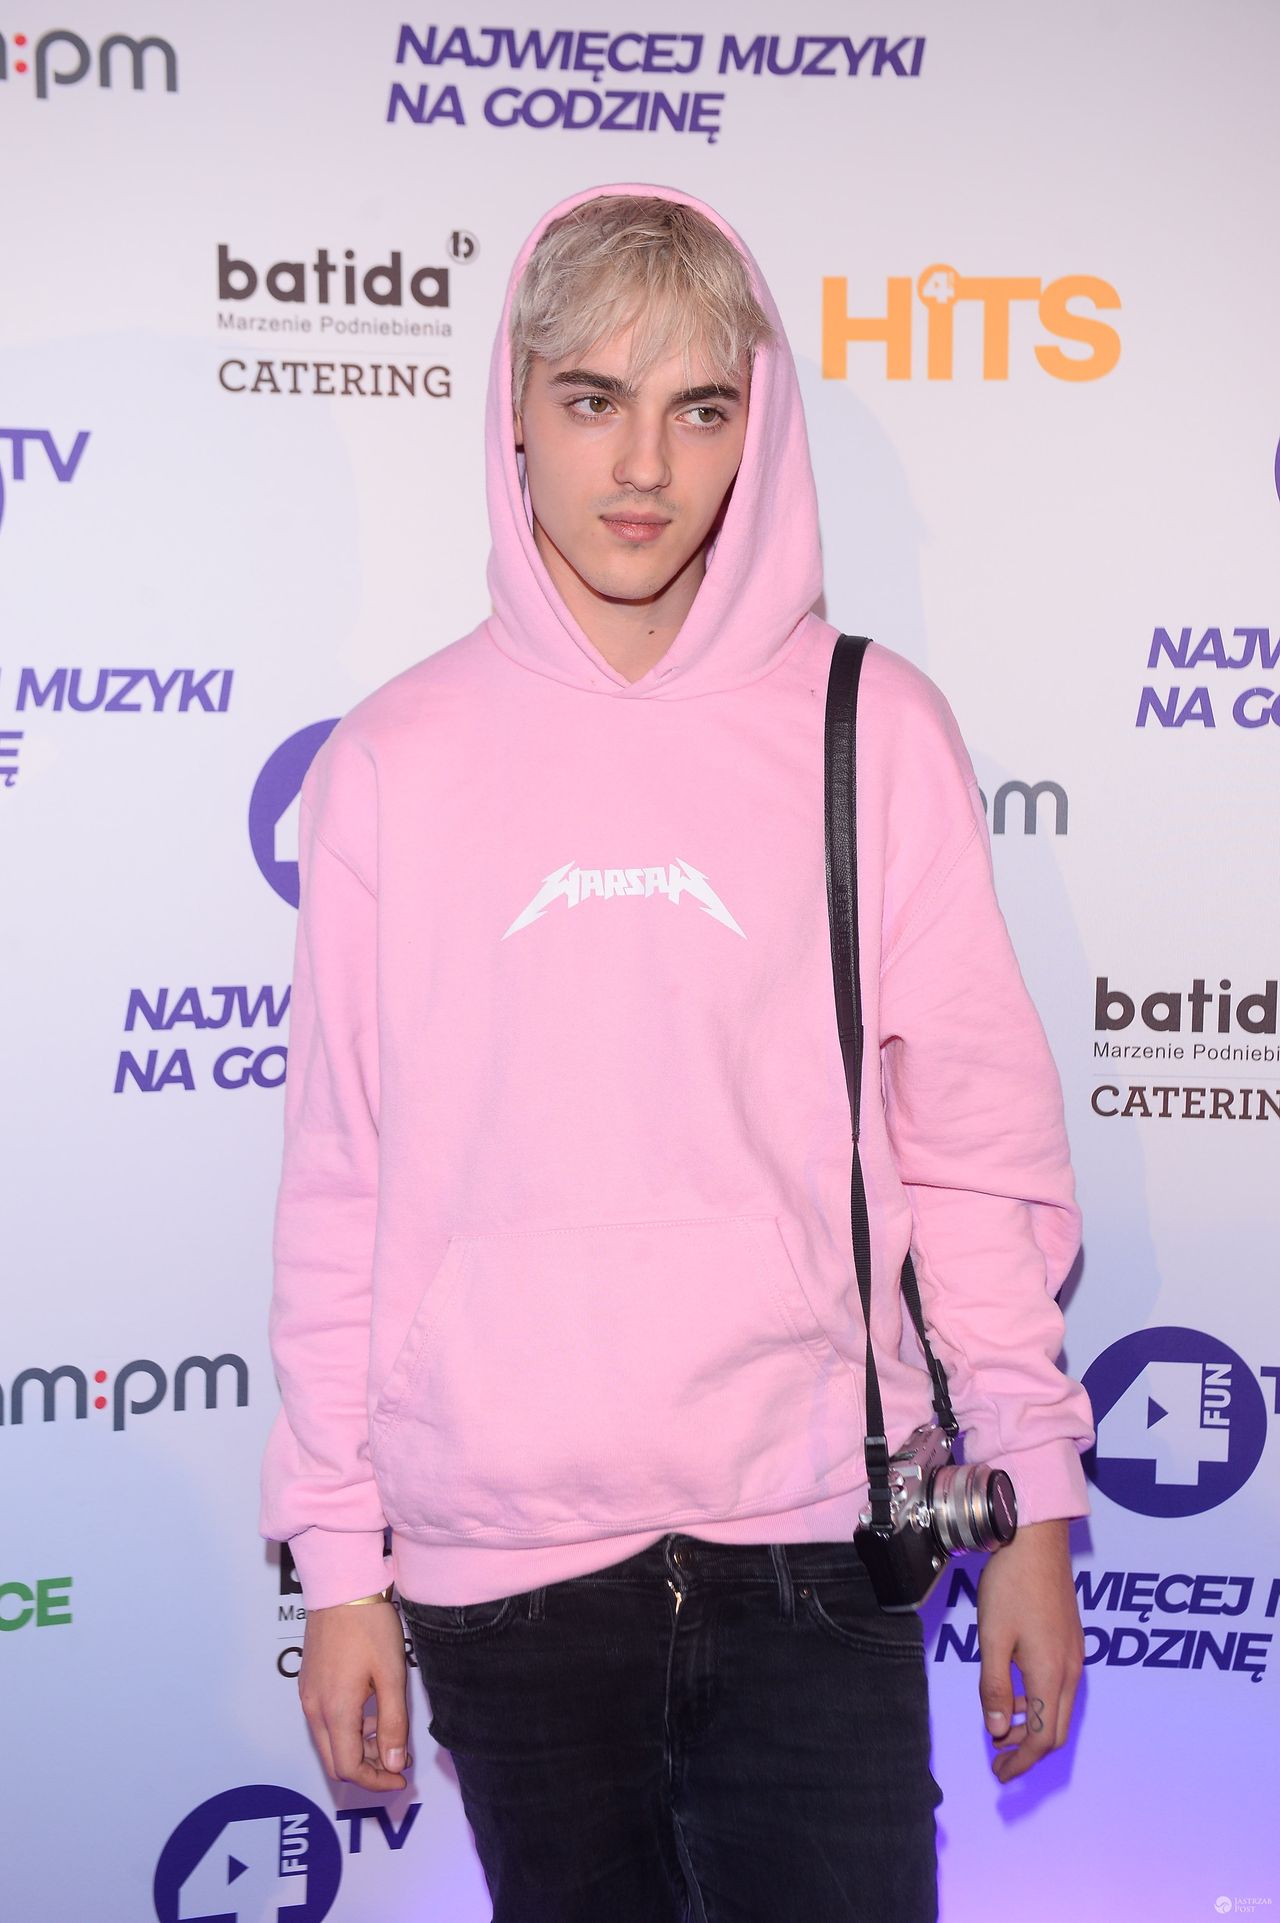 Radek Pestka w różowej bluzie na imprezie stacji muzycznej. Zdjęcia 2016